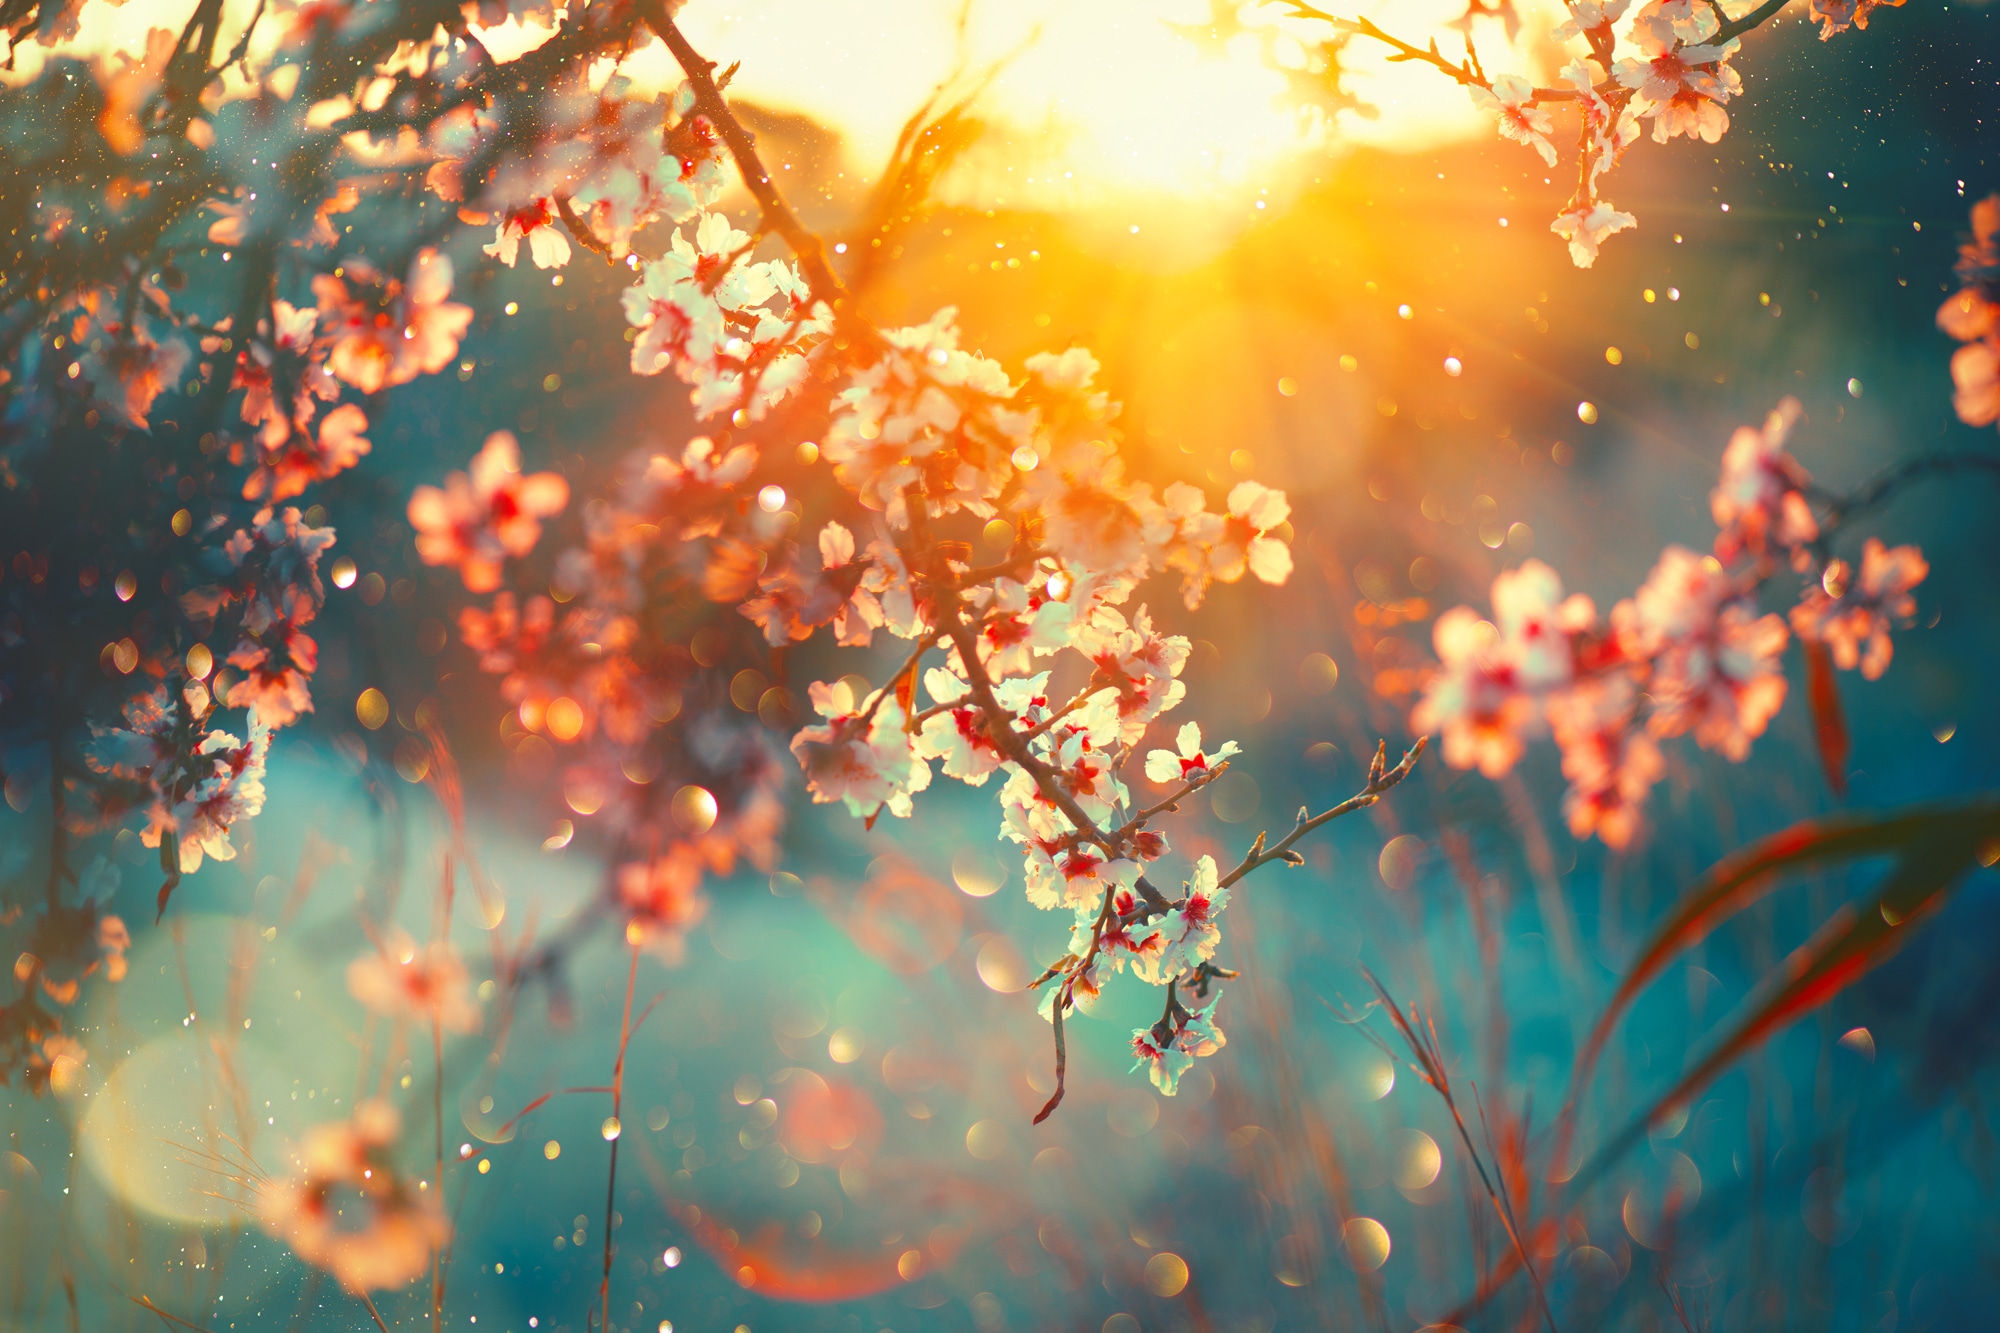 Leinwandbild »Cherry Blossom«, Blätter-Blätterbilder-Blumen-Blumenbilder-Bilder vom...